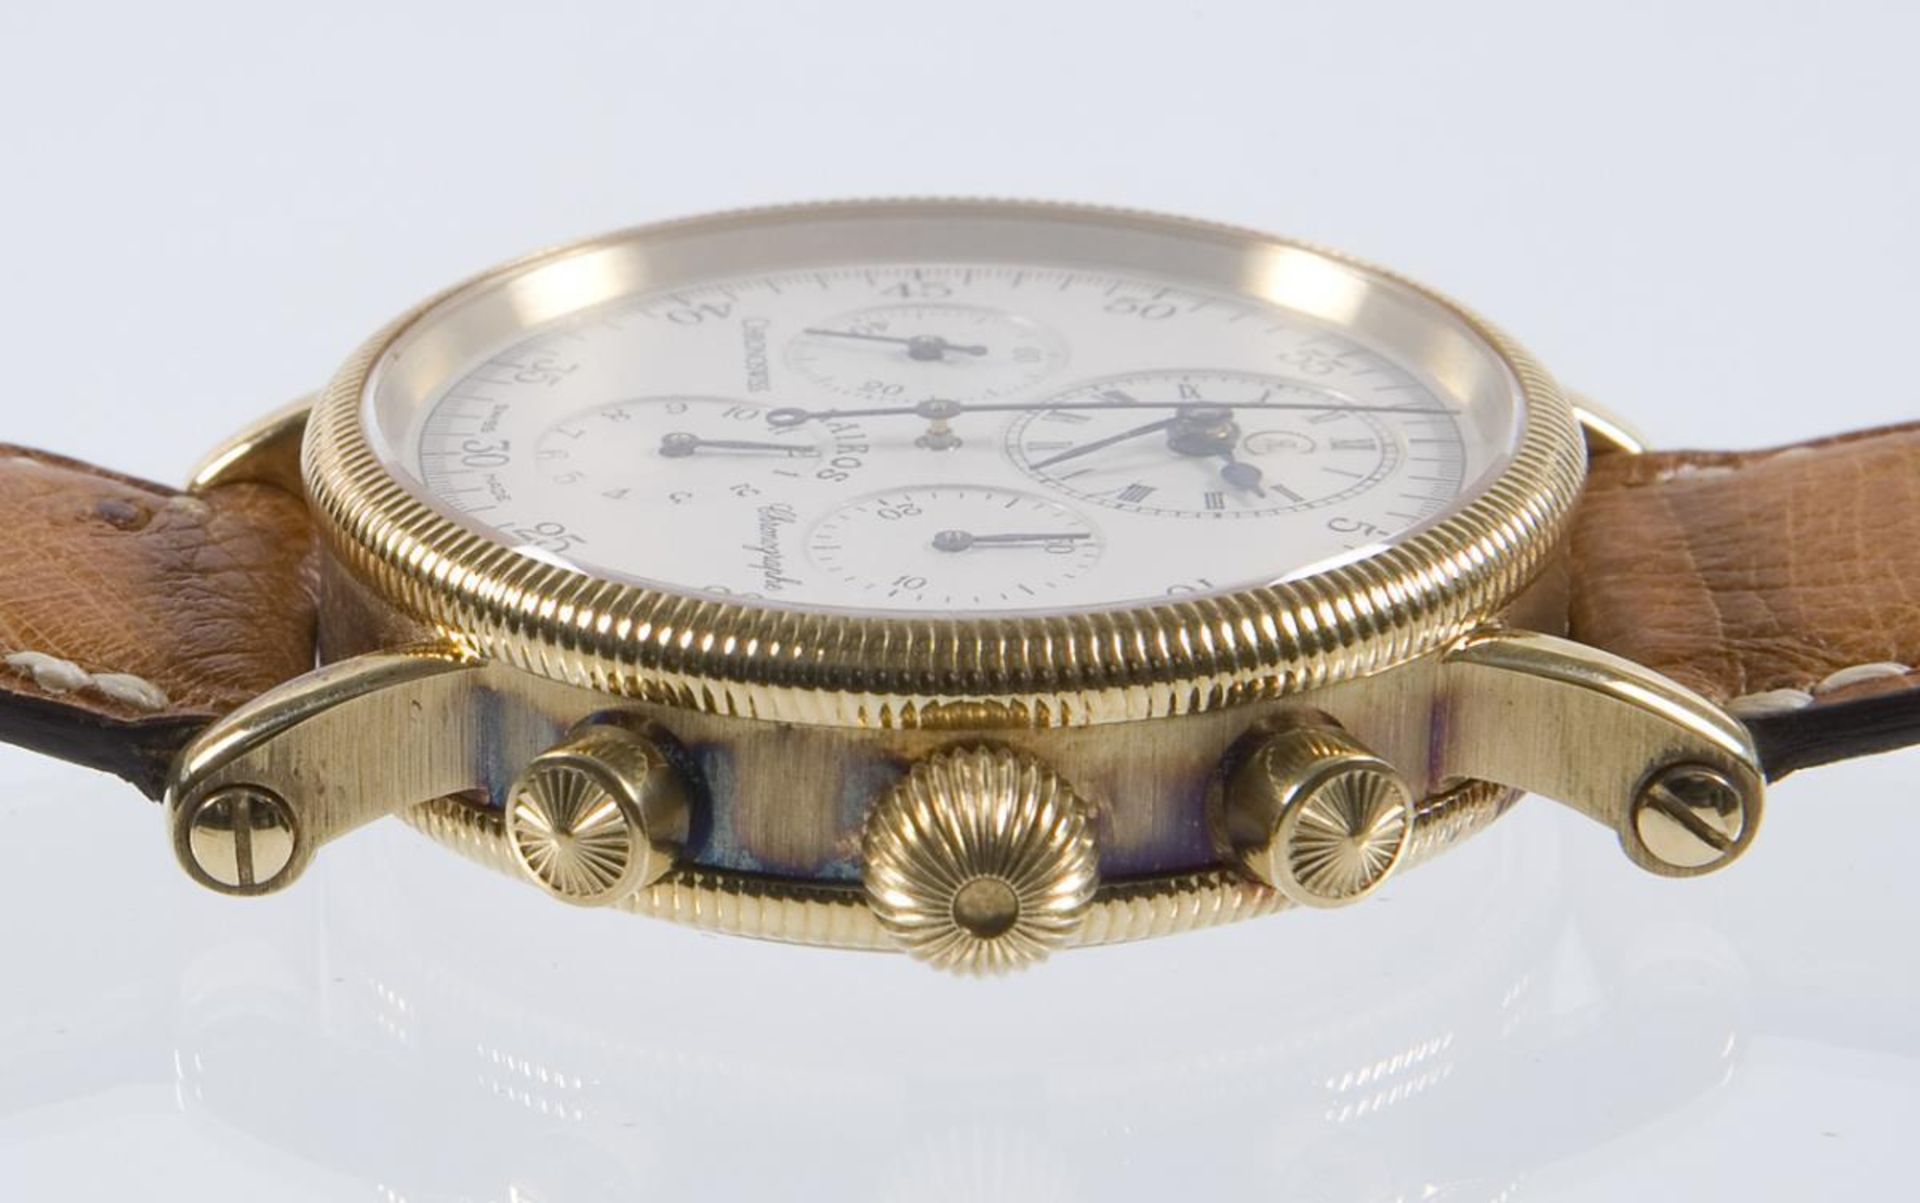 Armbanduhr-Chronograph Kairos in Gold.. CHRONOSWISS.| siehe Nachtrag - Bild 8 aus 9